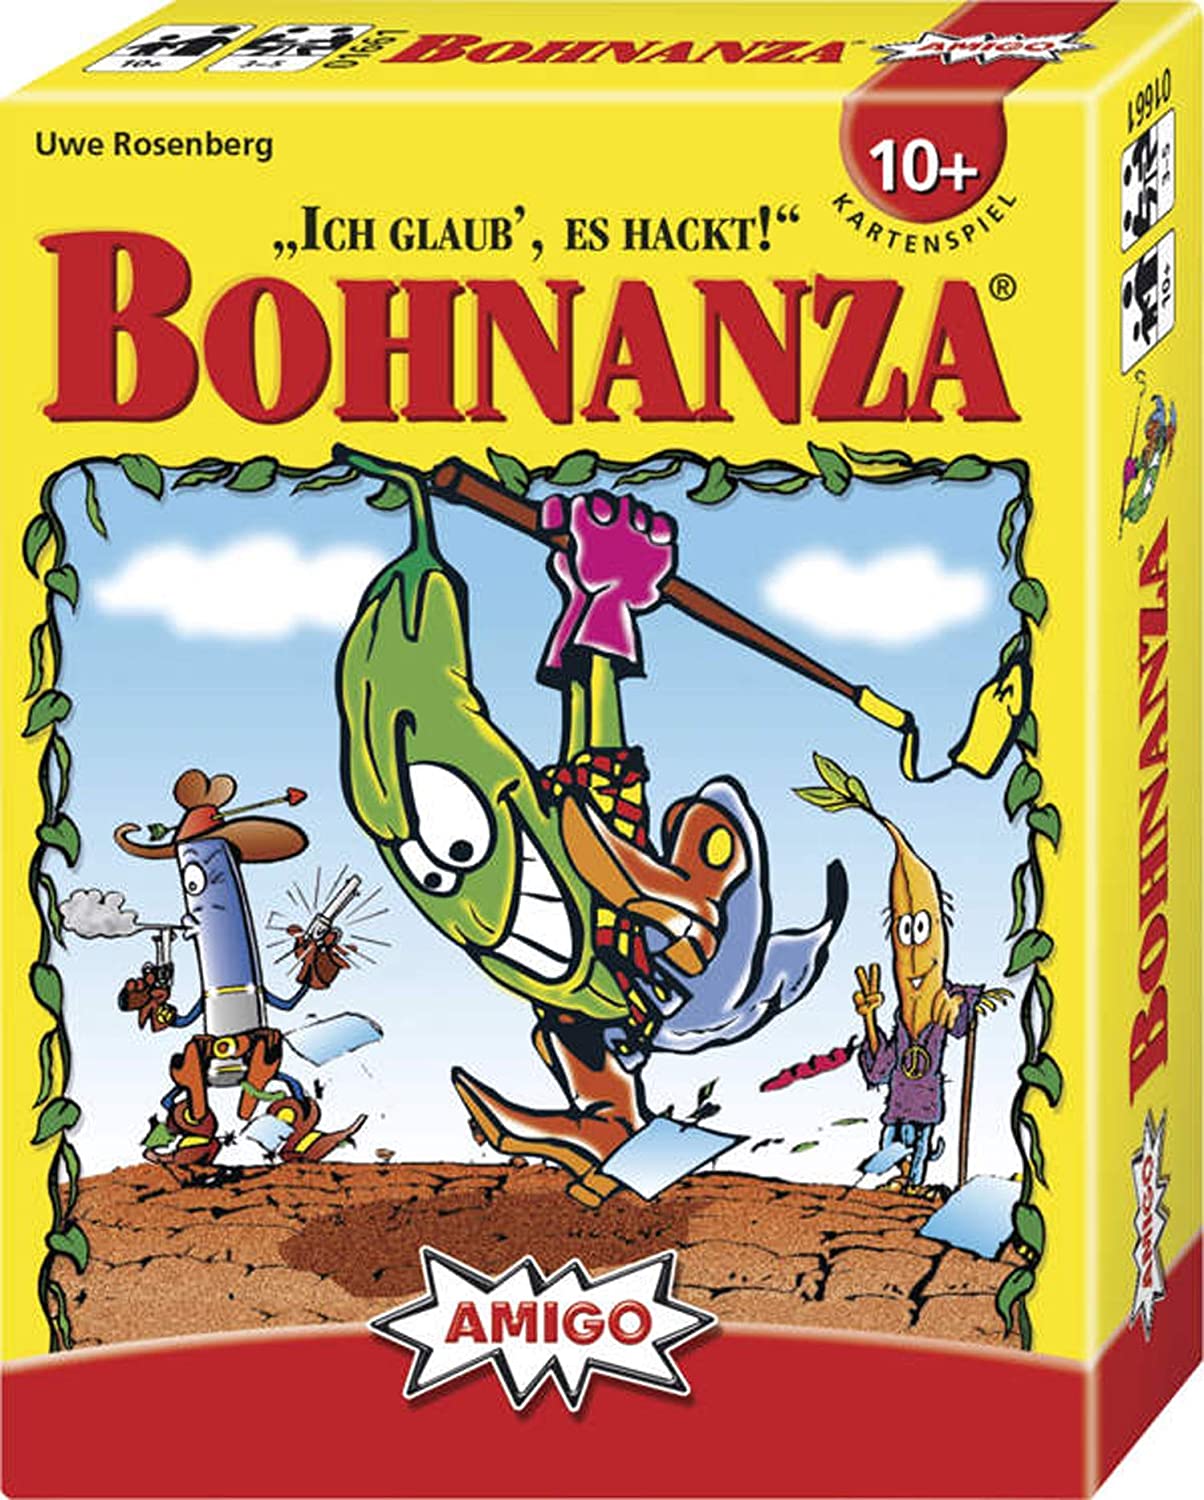 The Bohnanza Box